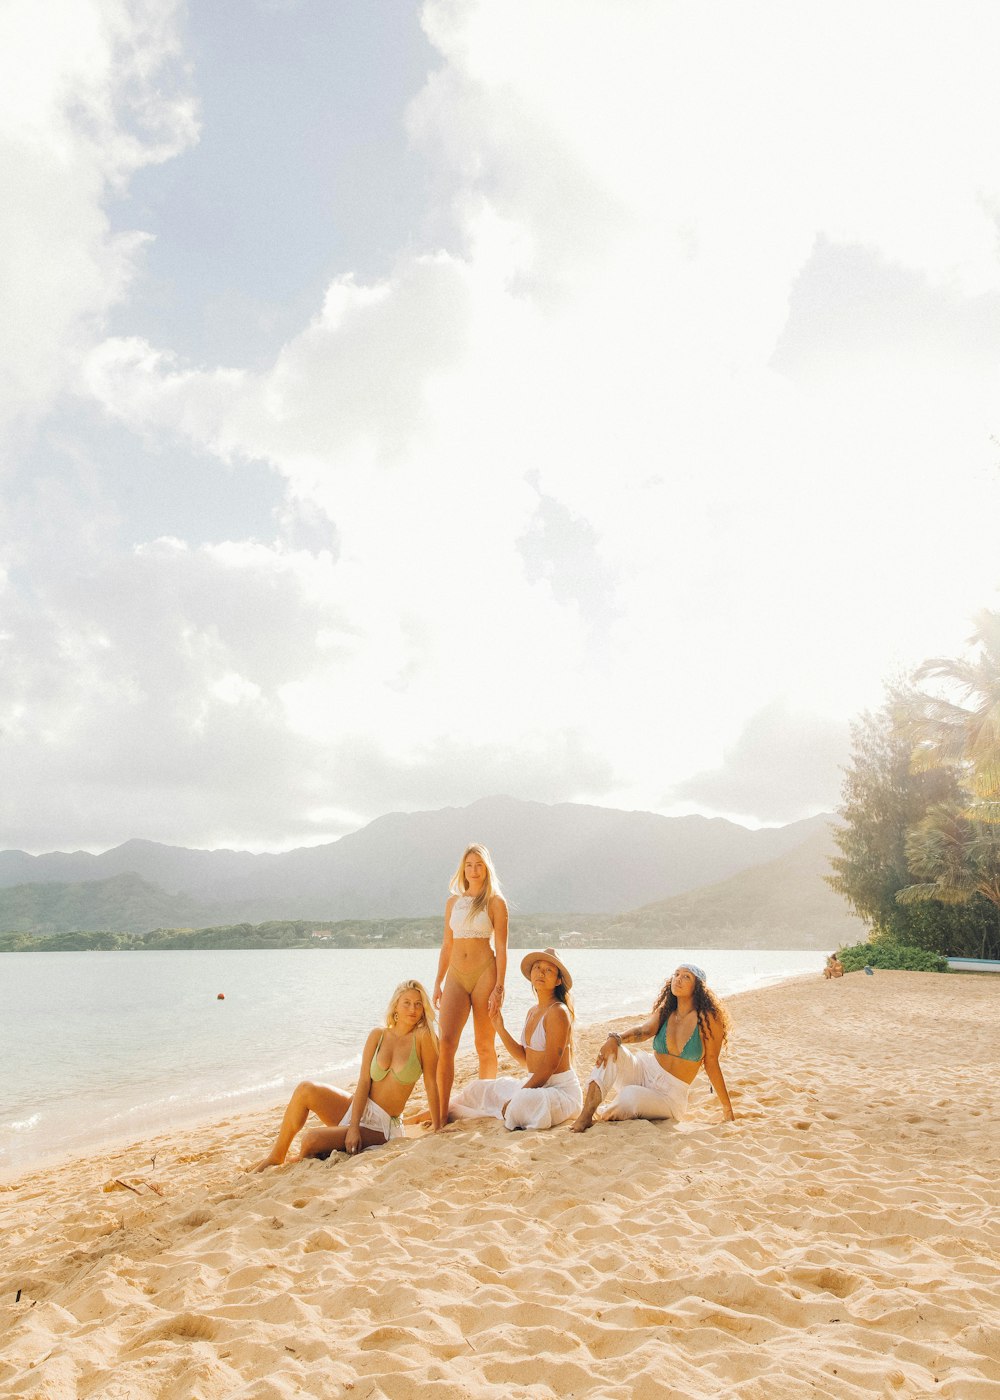 3 women in bikini sitting on beach shore during daytime